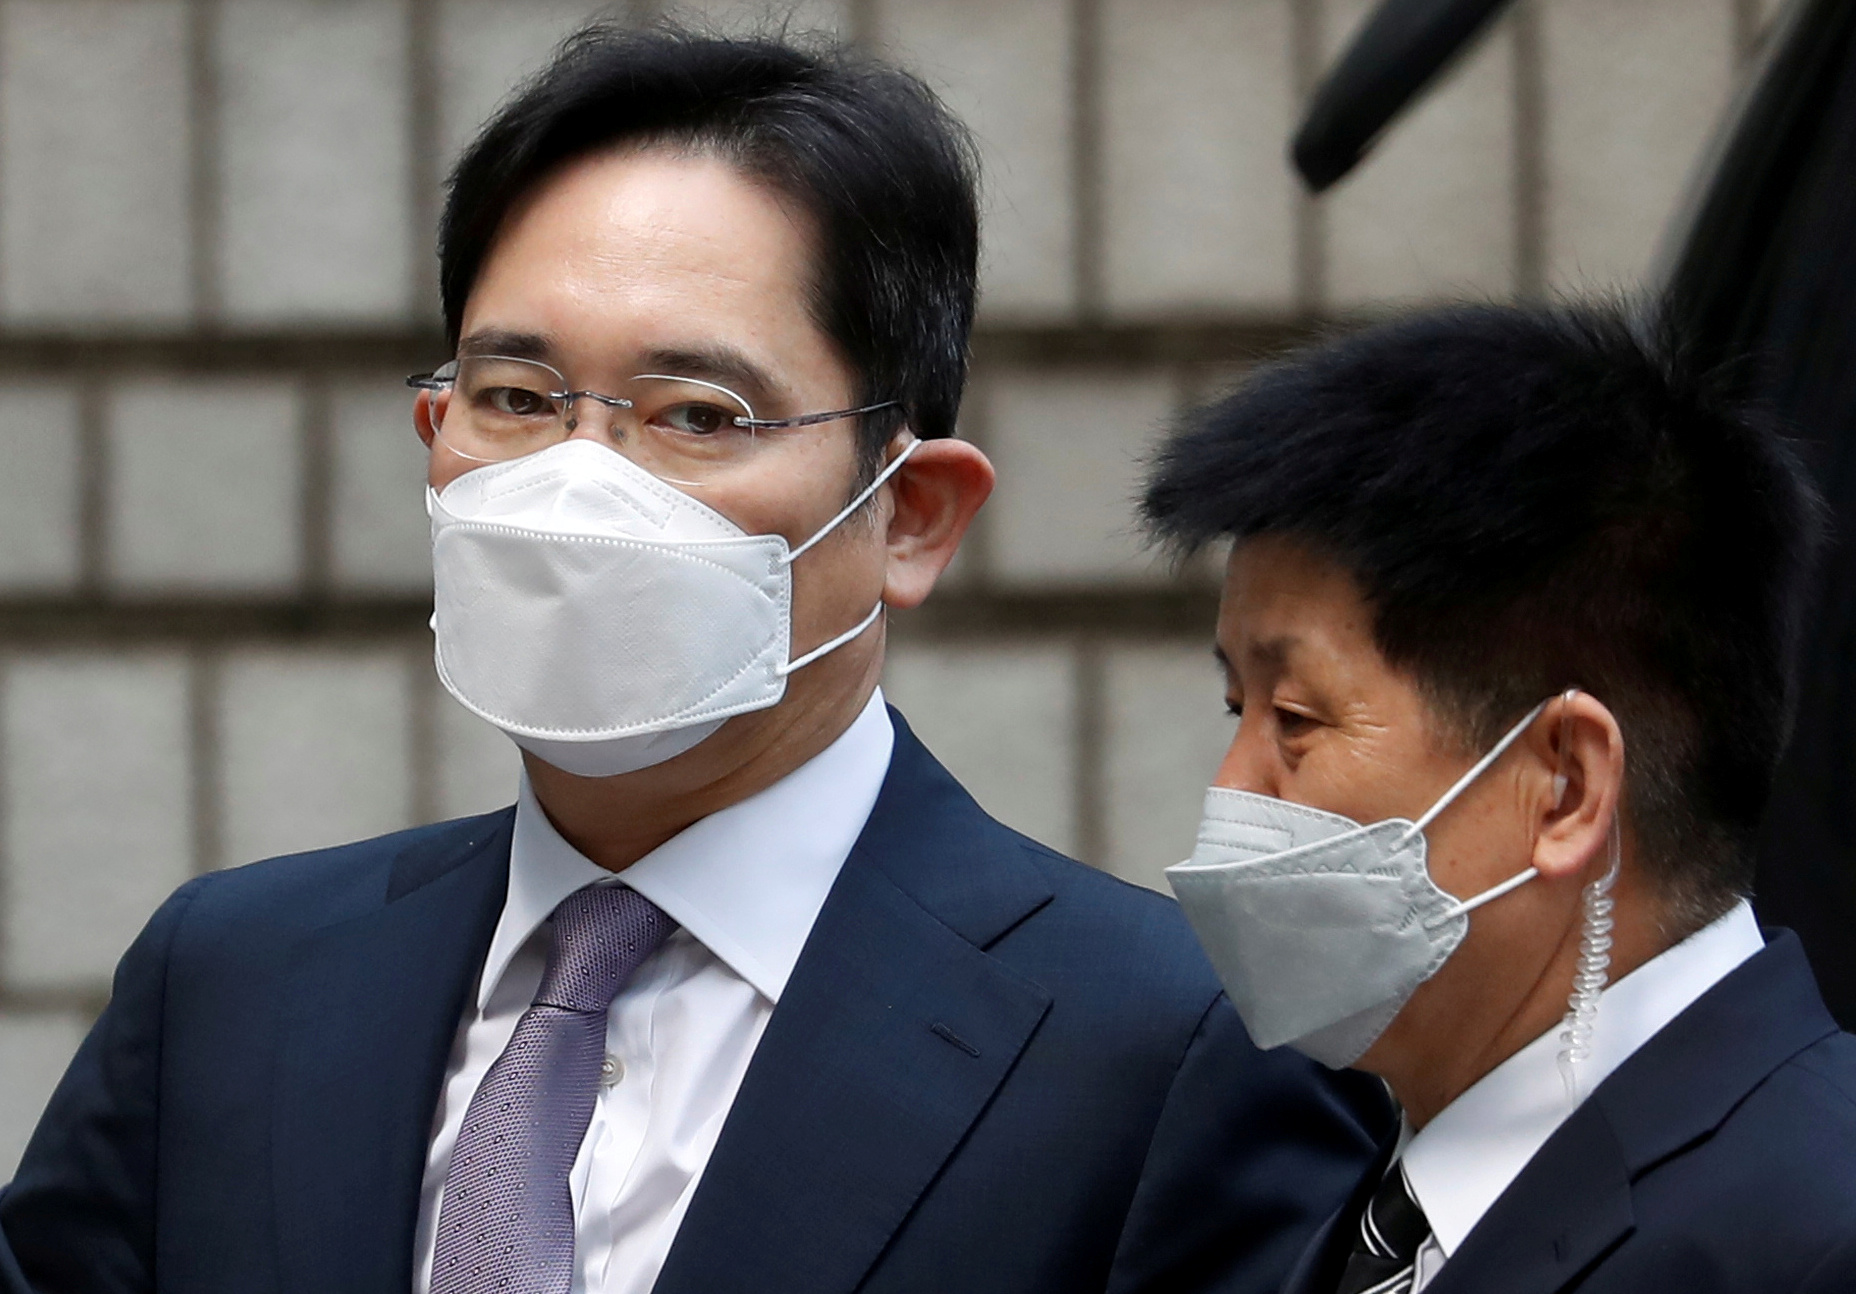 Un tribunal surcoreano dictaminará si encarcela al heredero de Samsung